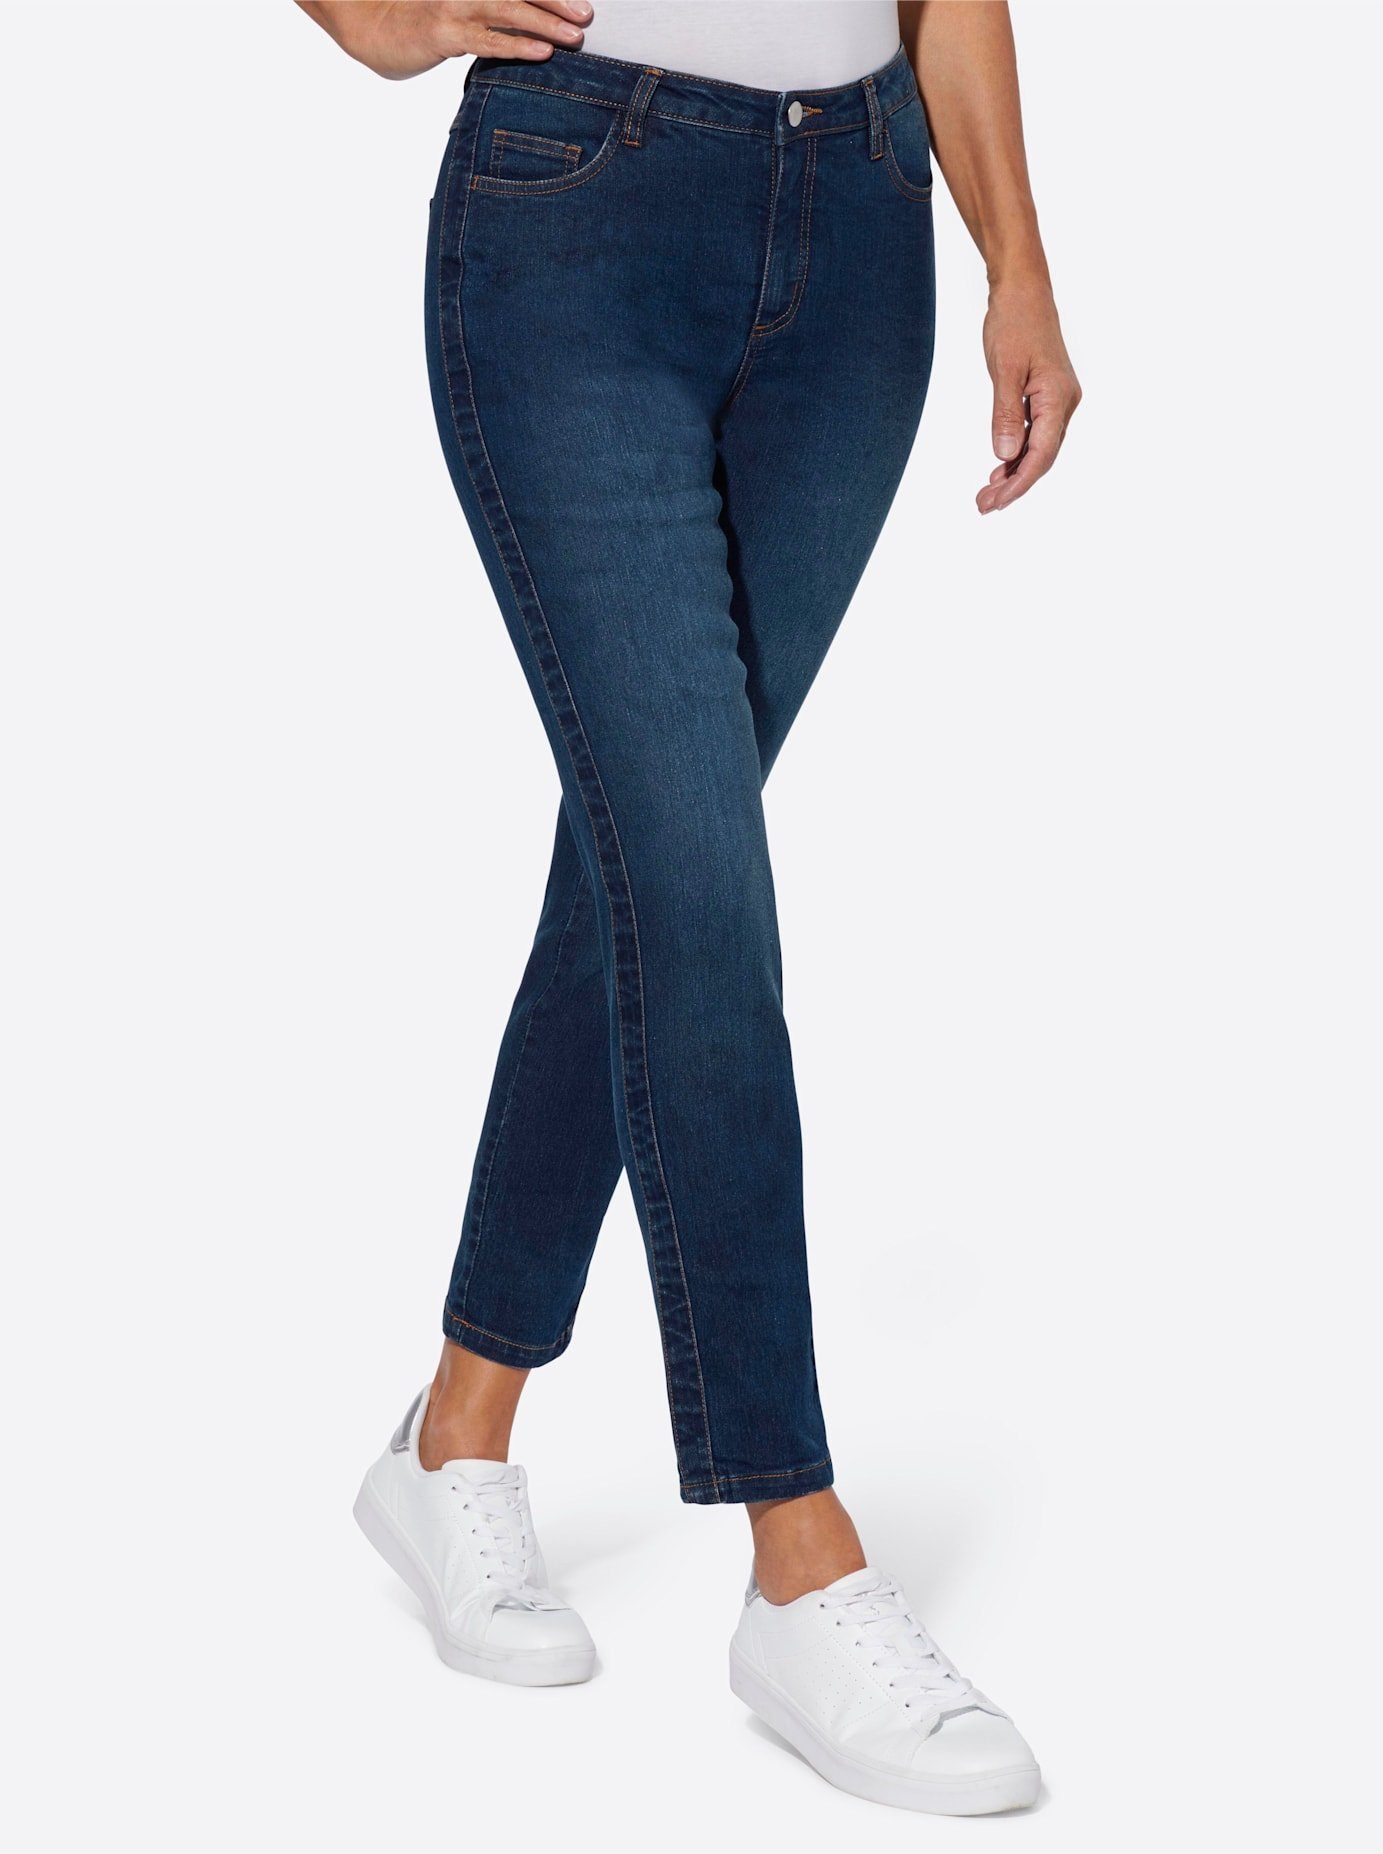 Classic Basics 7 8 jeans